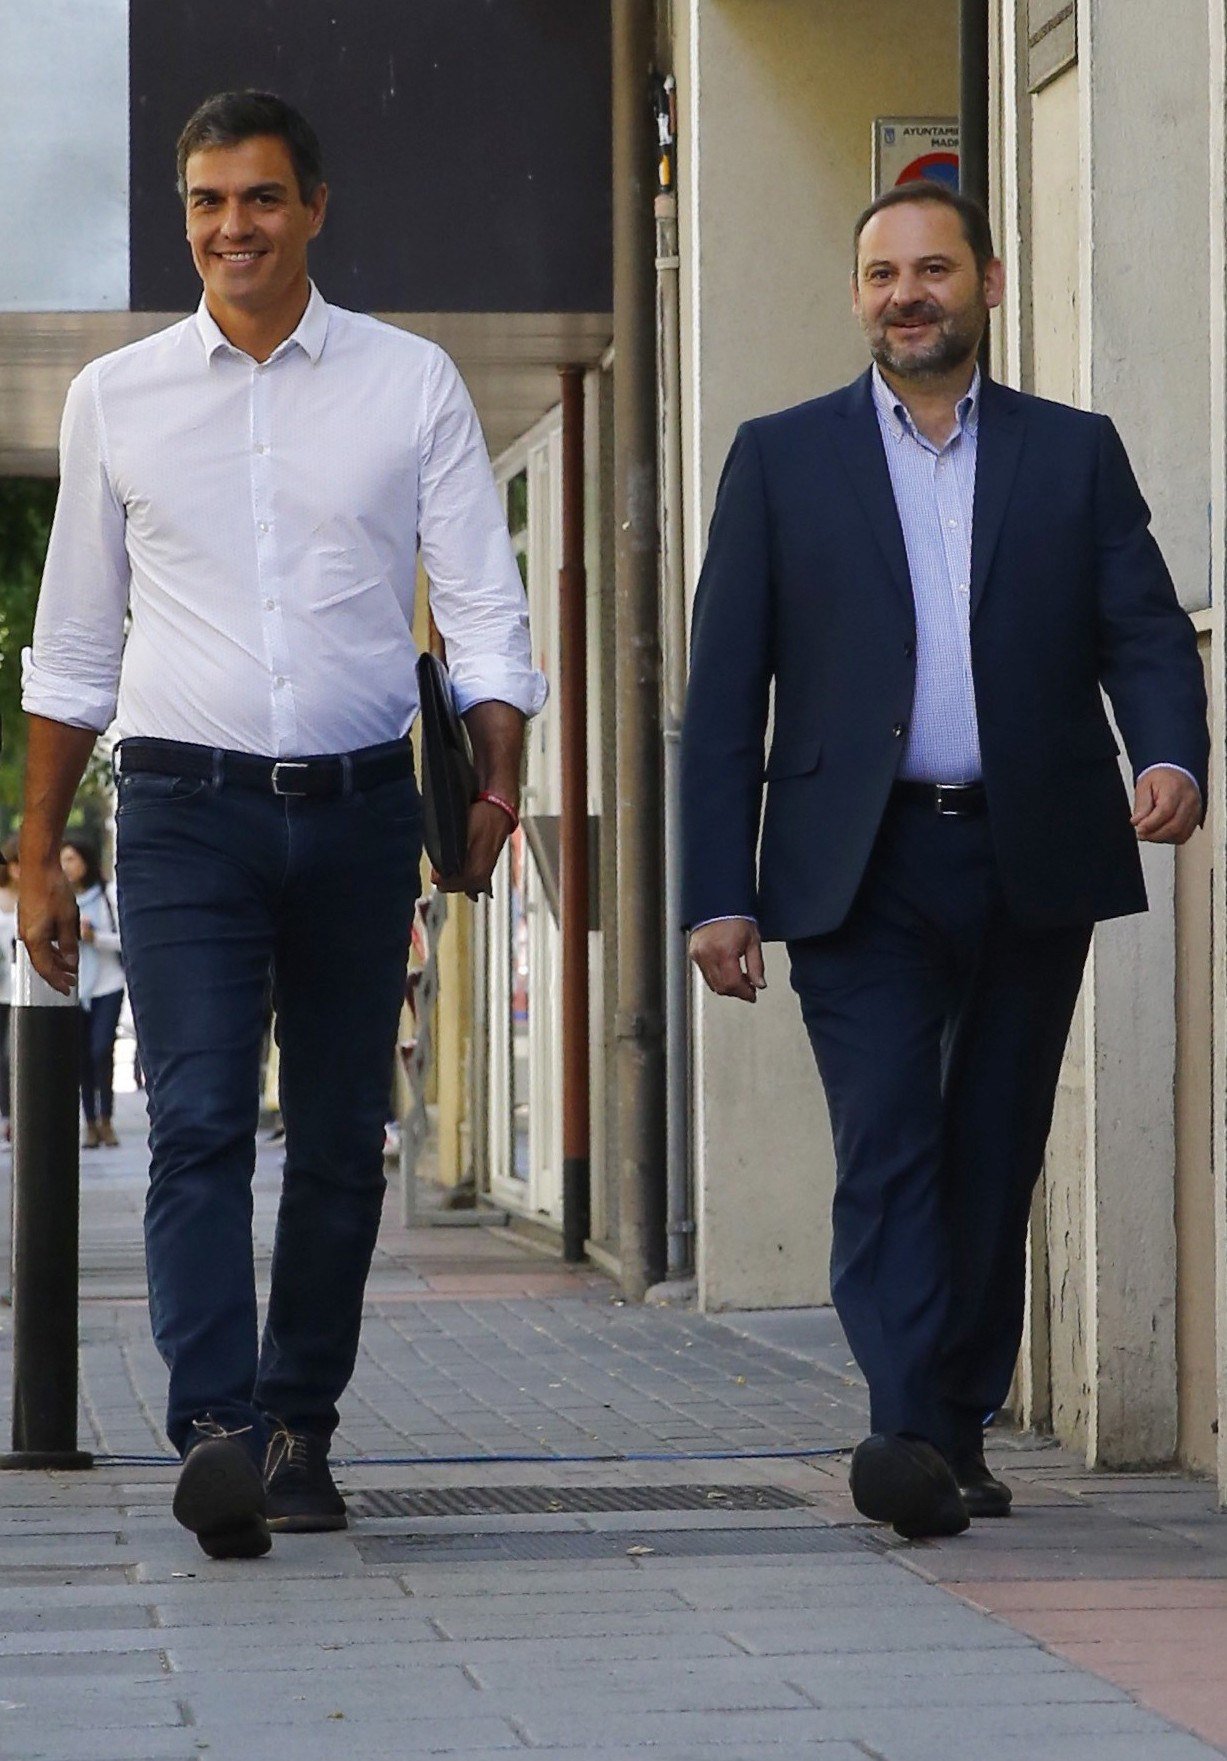 Ábalos replica a Parlon que “no hi ha tuteles” entre PSOE i PSC